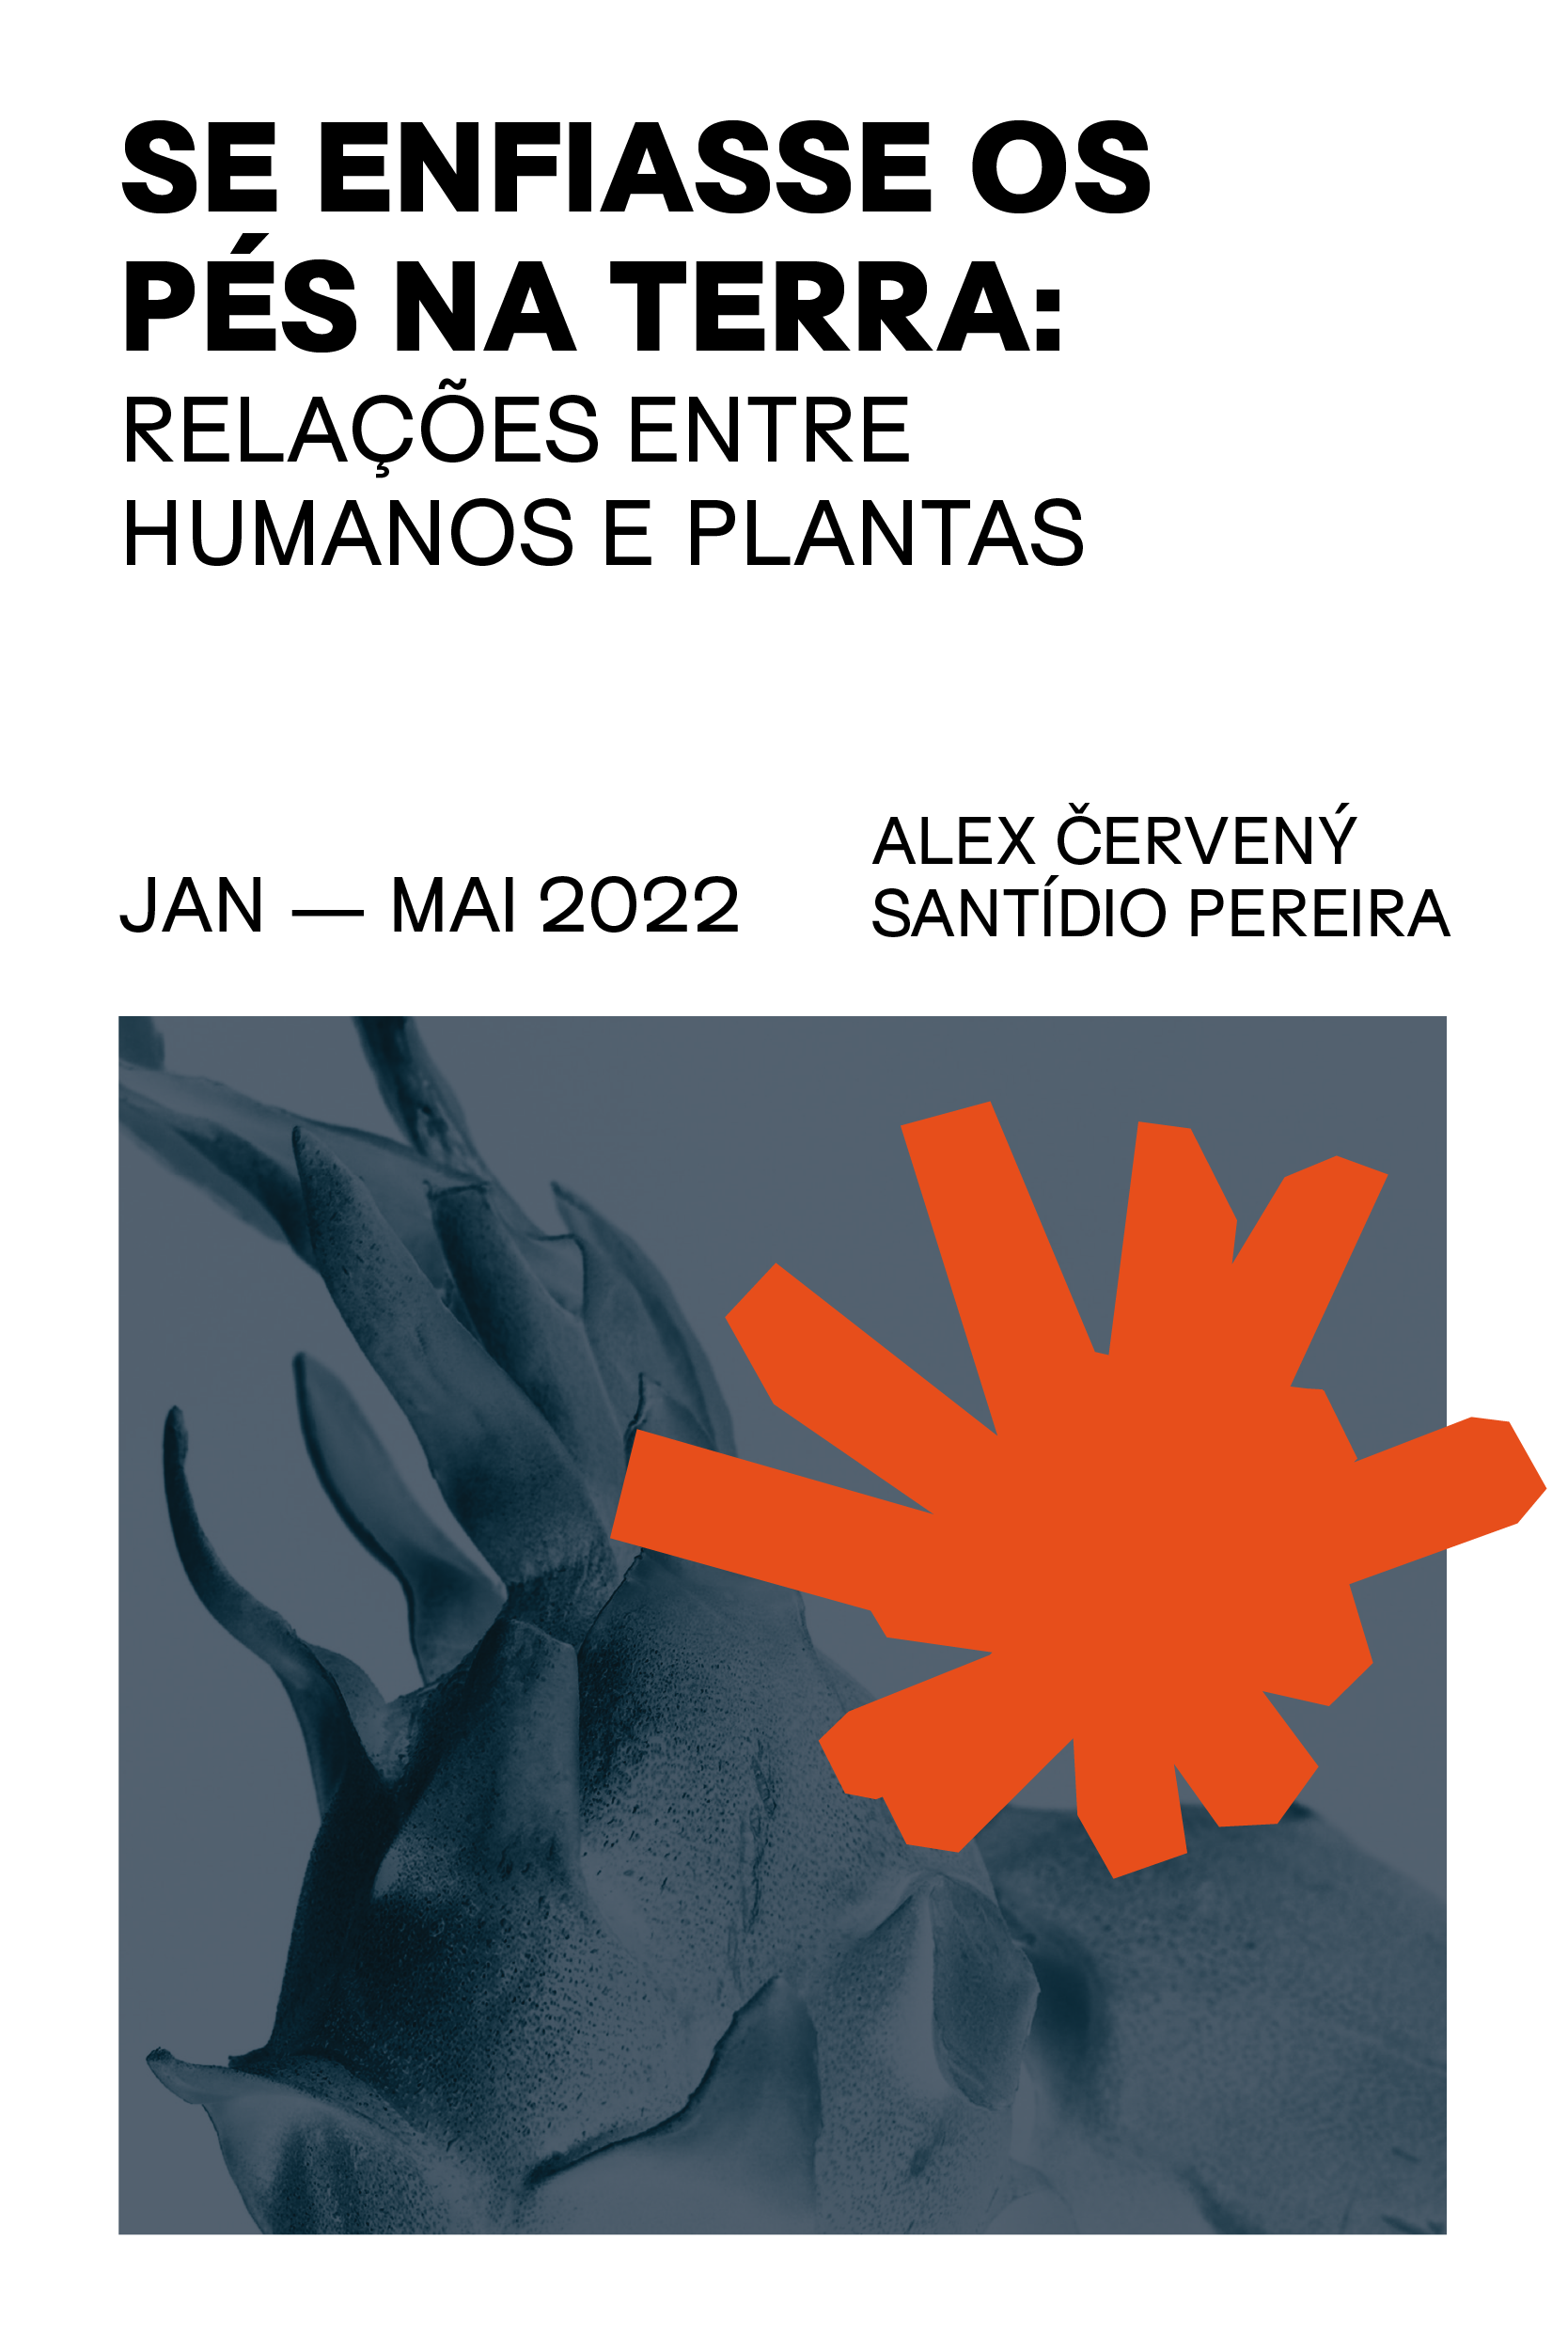 Exposição Programa Público "Se enfiasse os pés na terra: relações entre humanos e plantas"